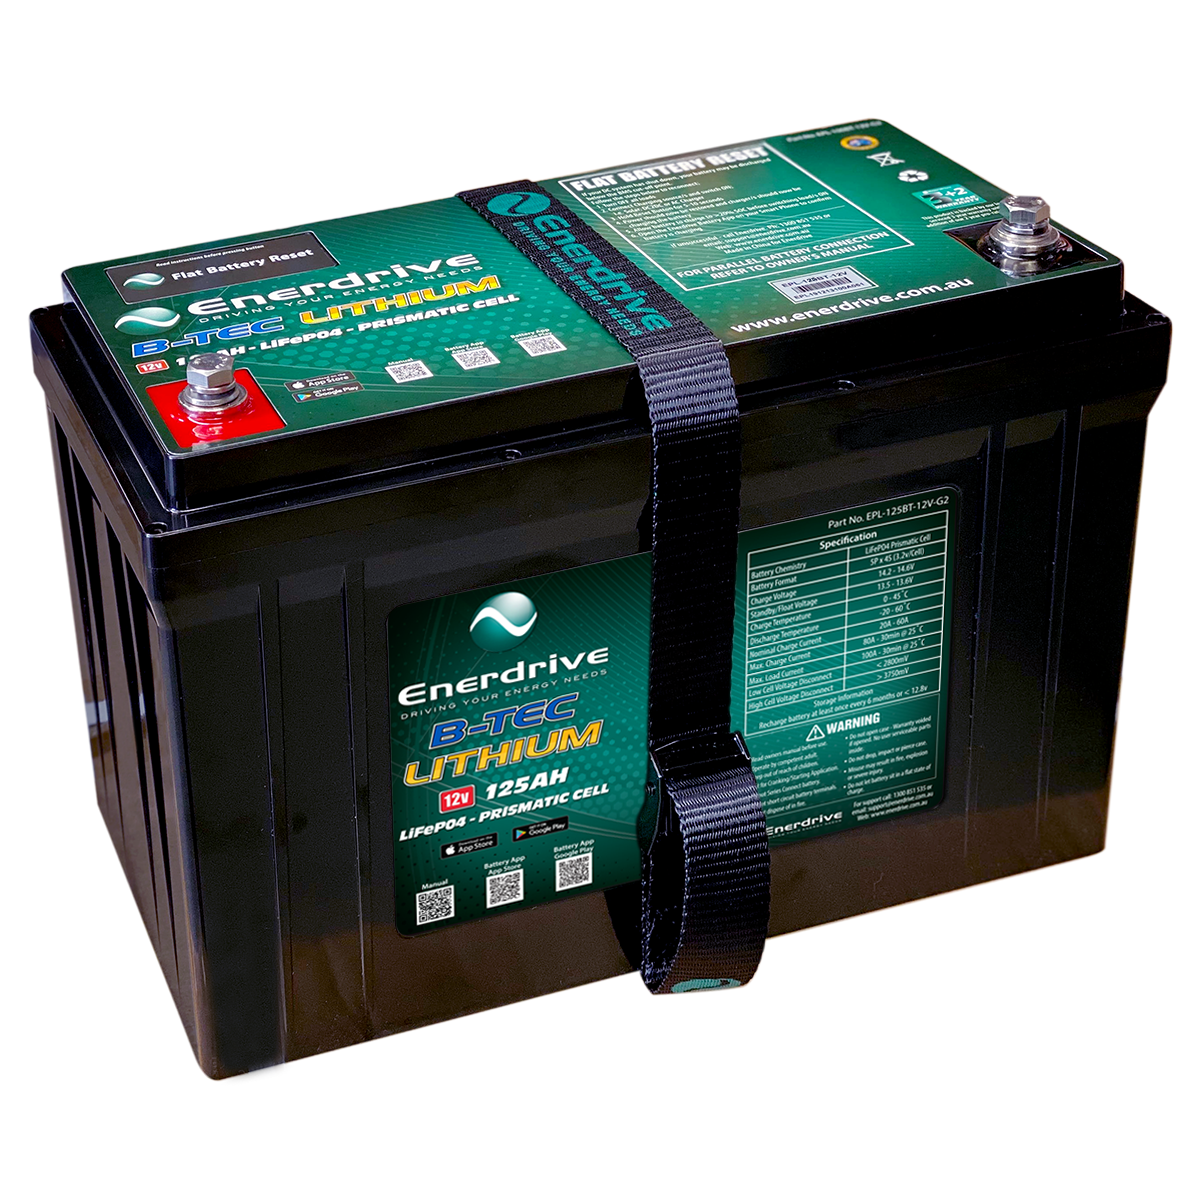 Enerdrive B-TEC 125AH 12V LifePO4 Battery Gen2